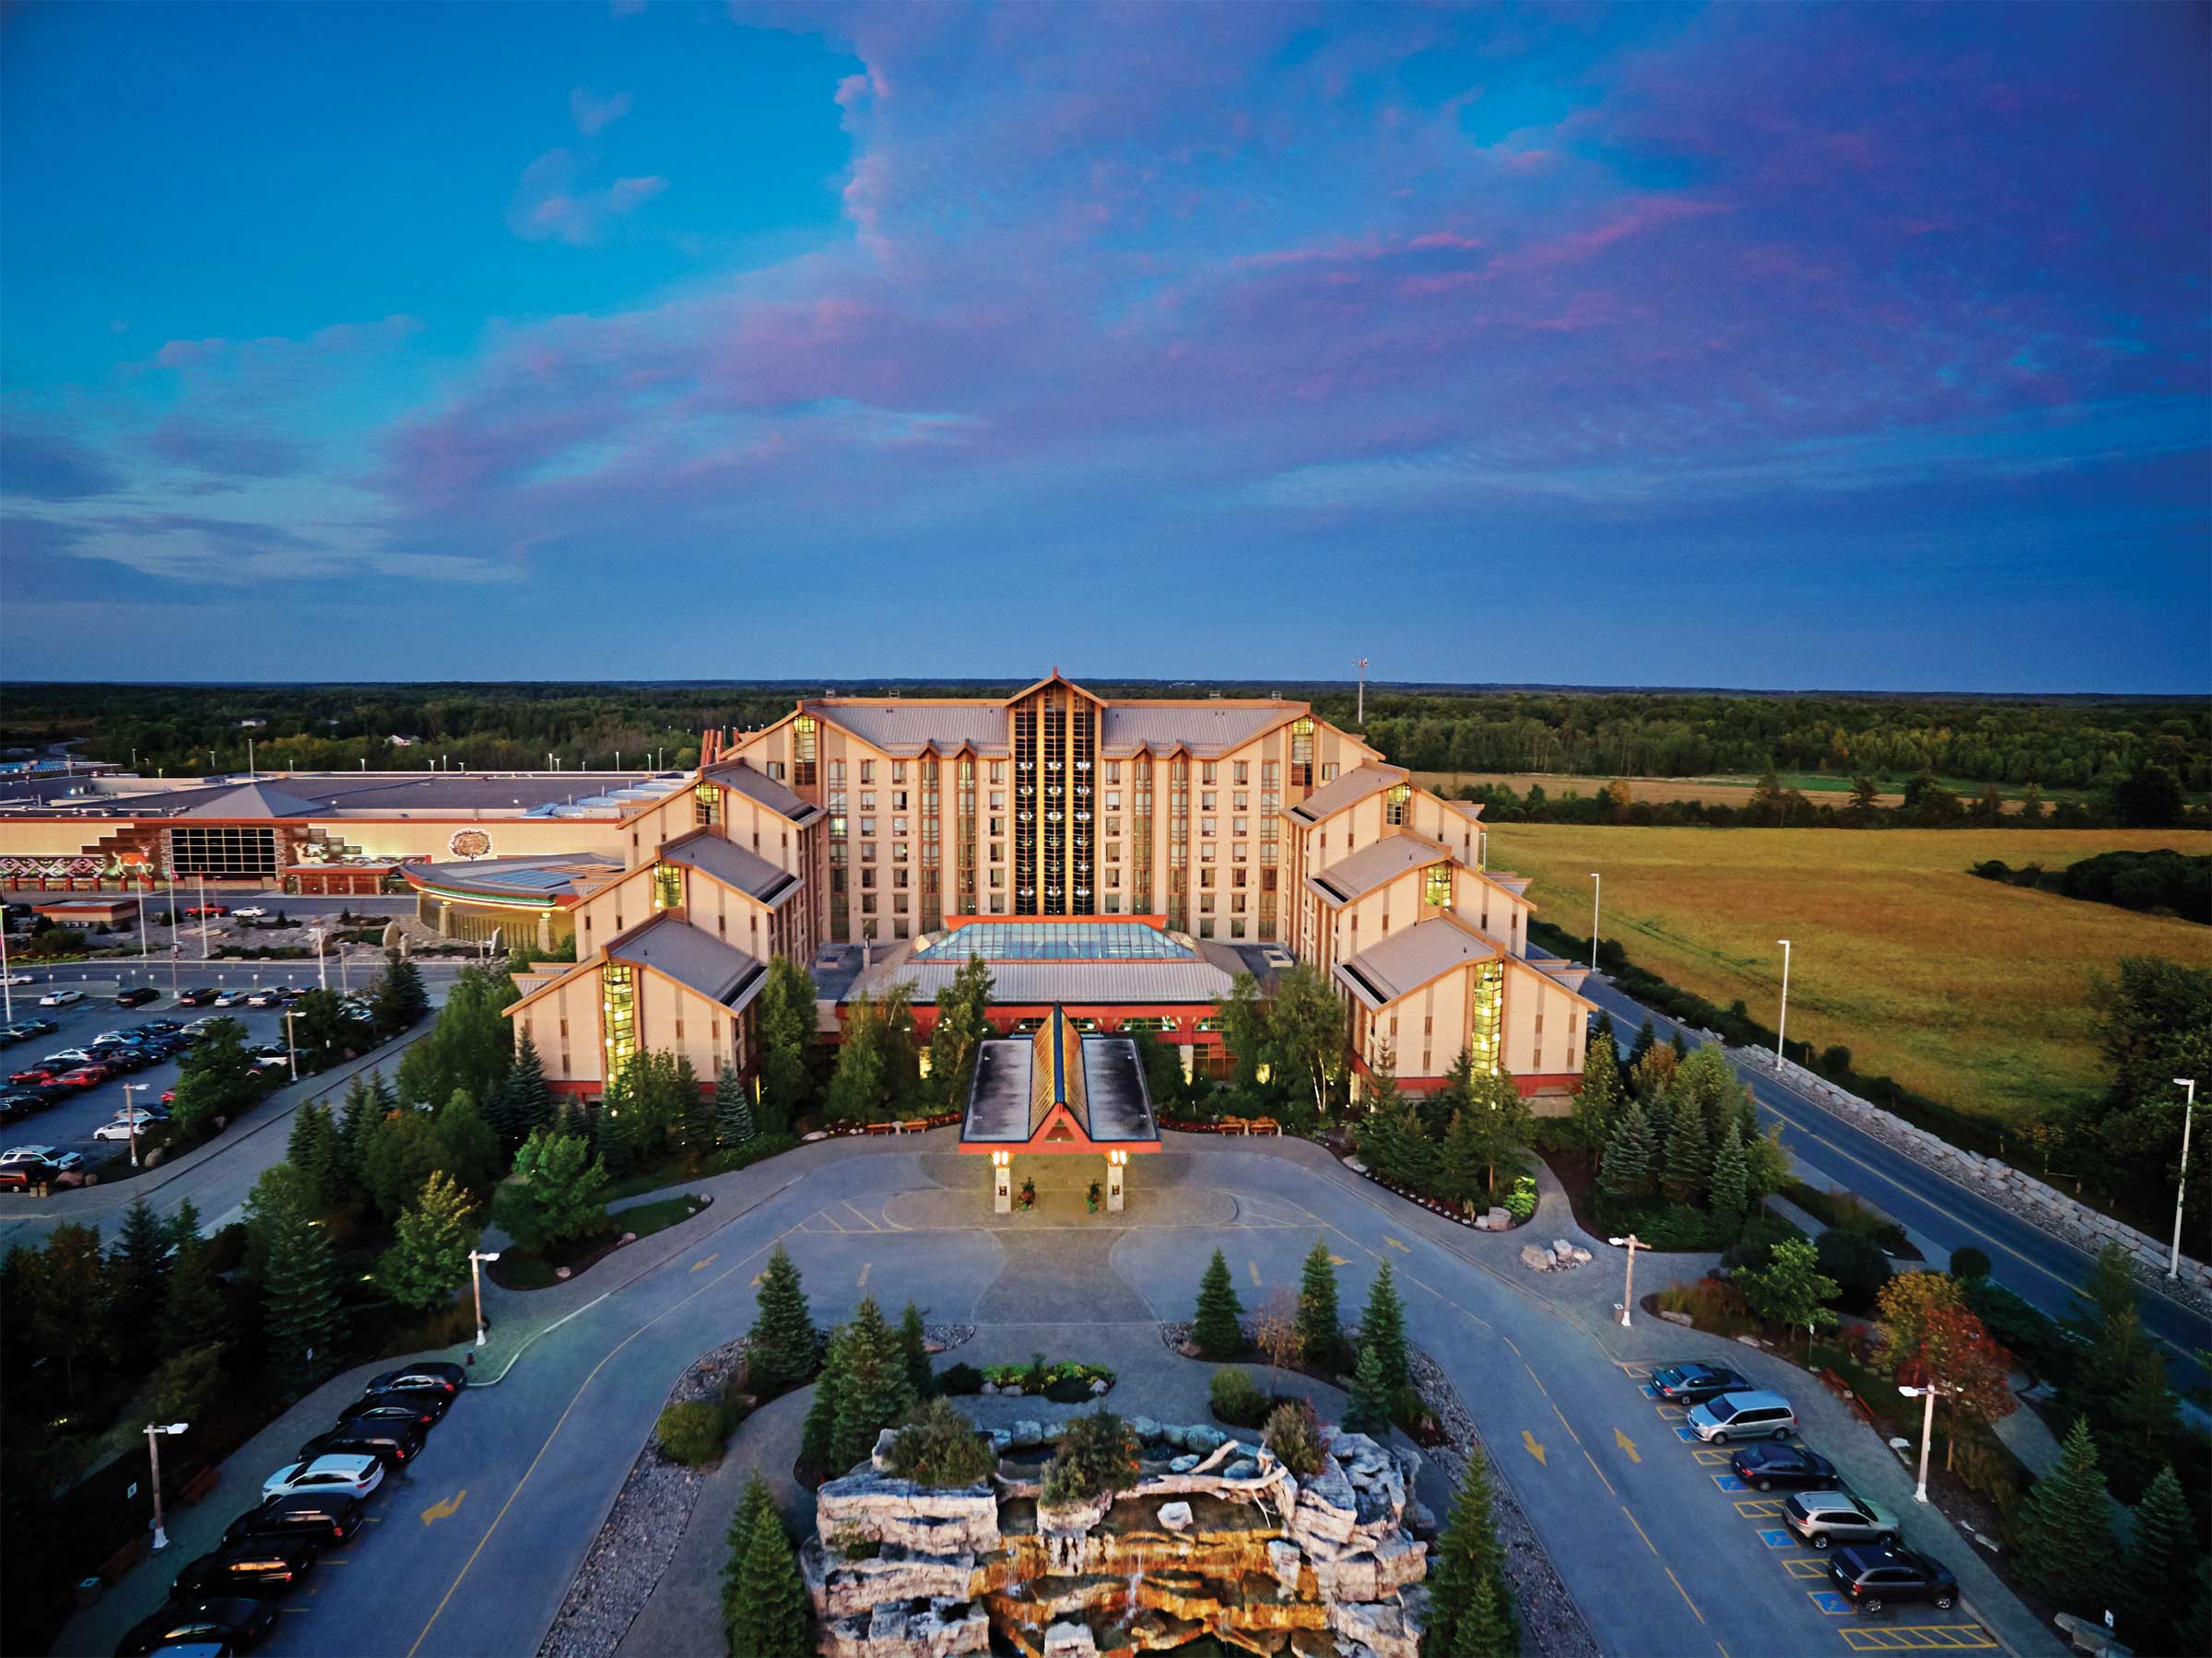 Casino Rama hotel and resort